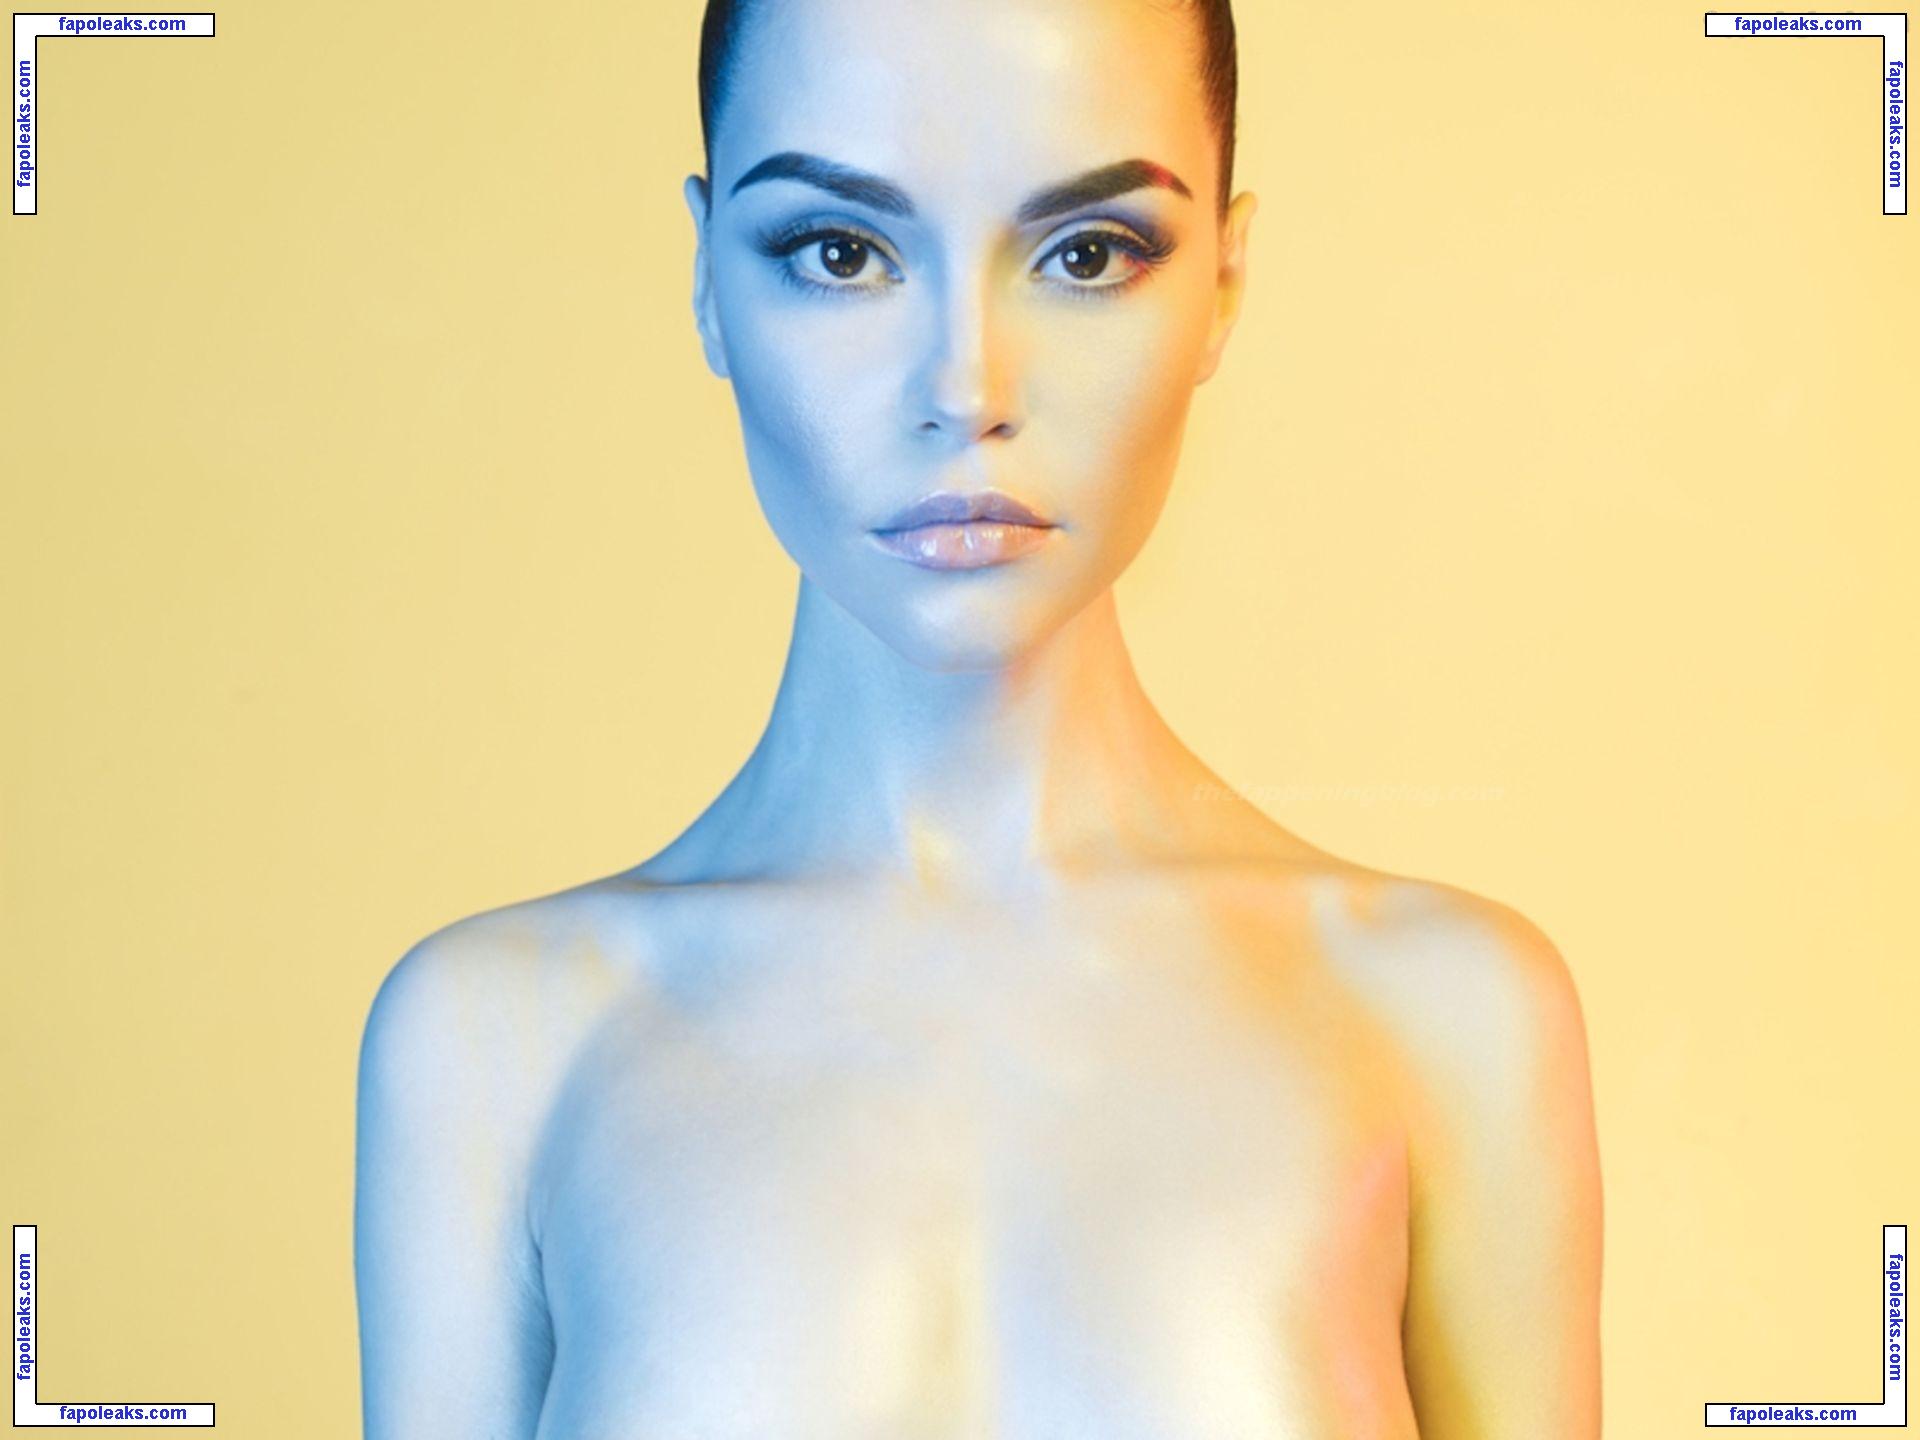 Nadezda Korobkova nude photo #0004 from OnlyFans